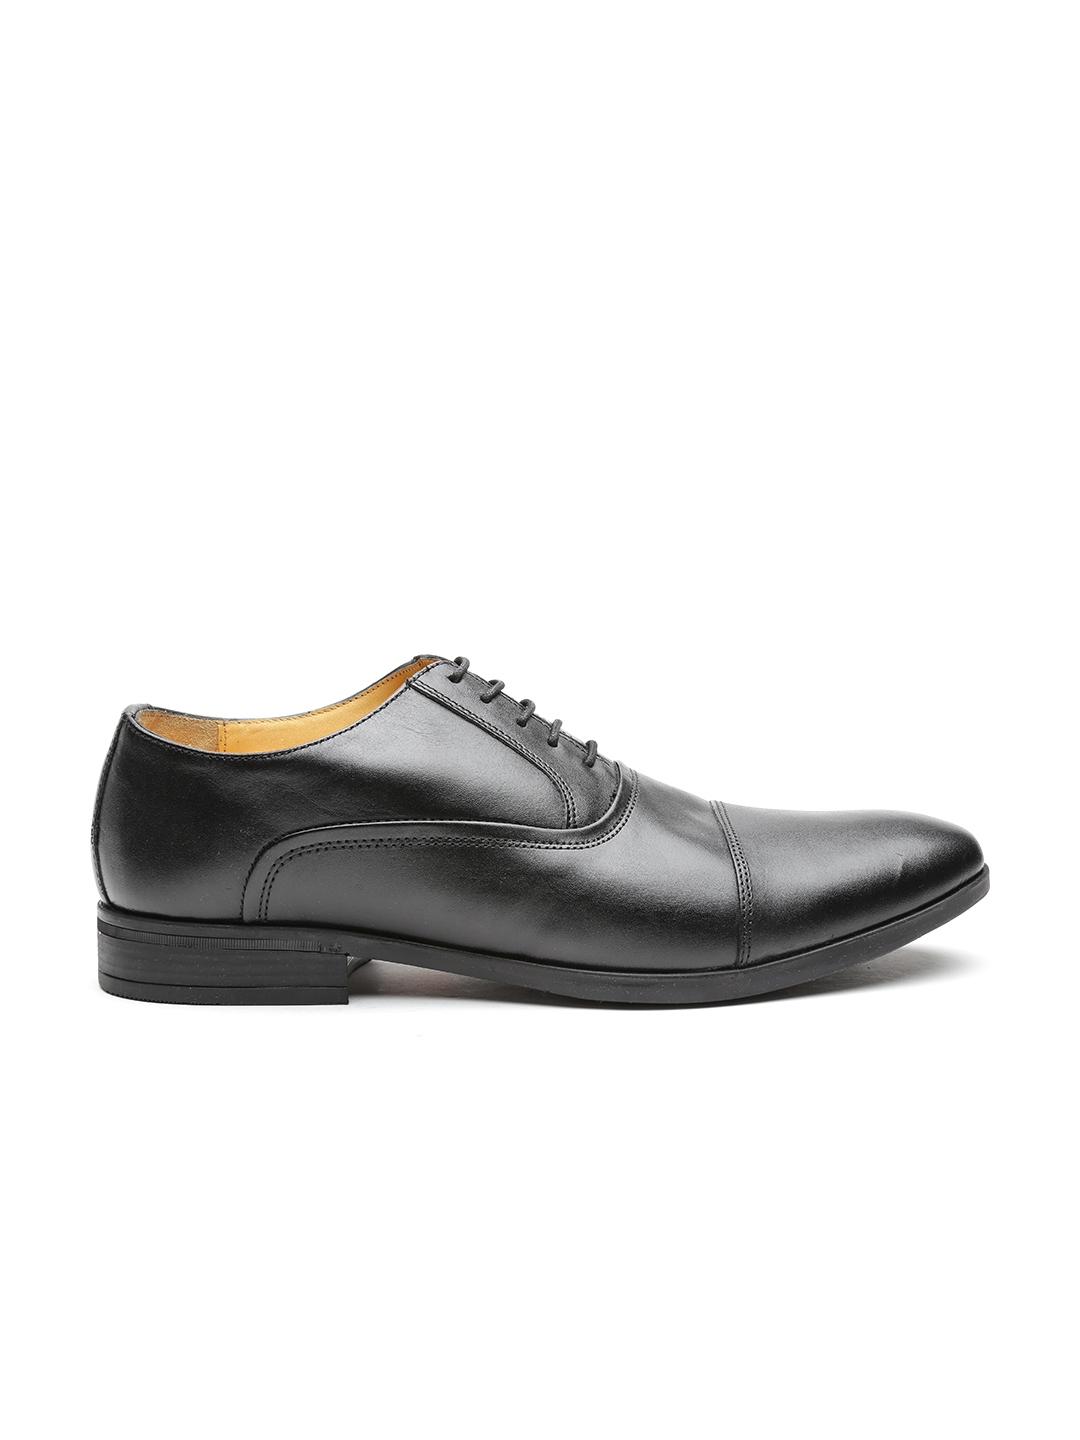 Buy Marks & Spencer Men Black Leather Formal Shoes - Formal Shoes for ...